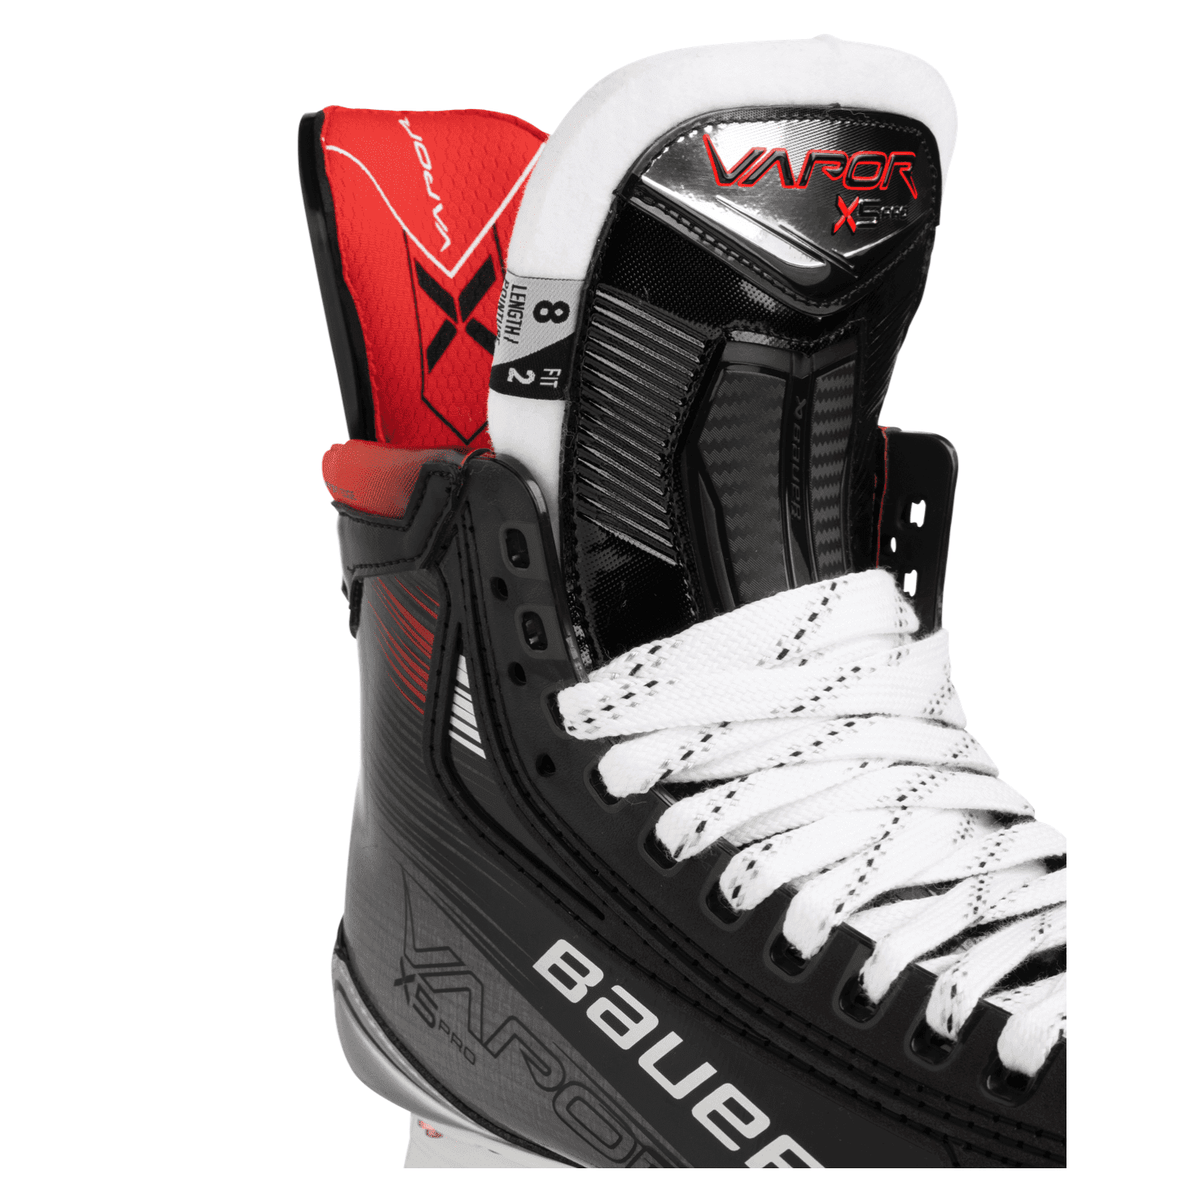 Bauer Vapor X5 Pro Ice Hockey Skates Senior